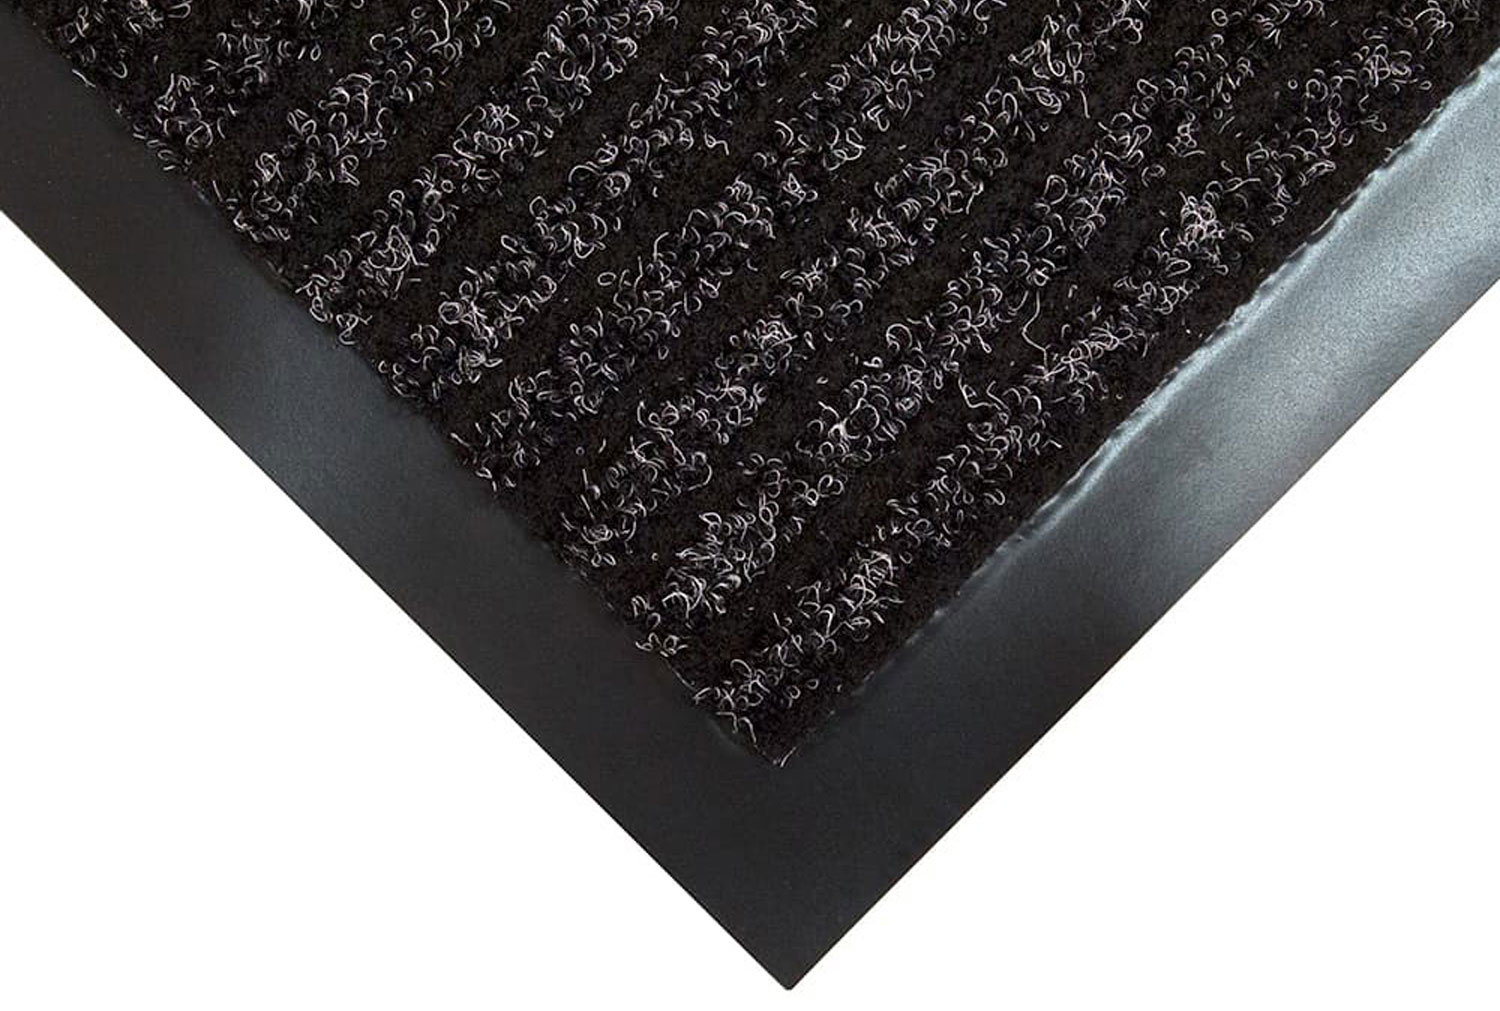 Toughrib Heavy Duty Doormat (Charcoal), 60wx90d (cm)